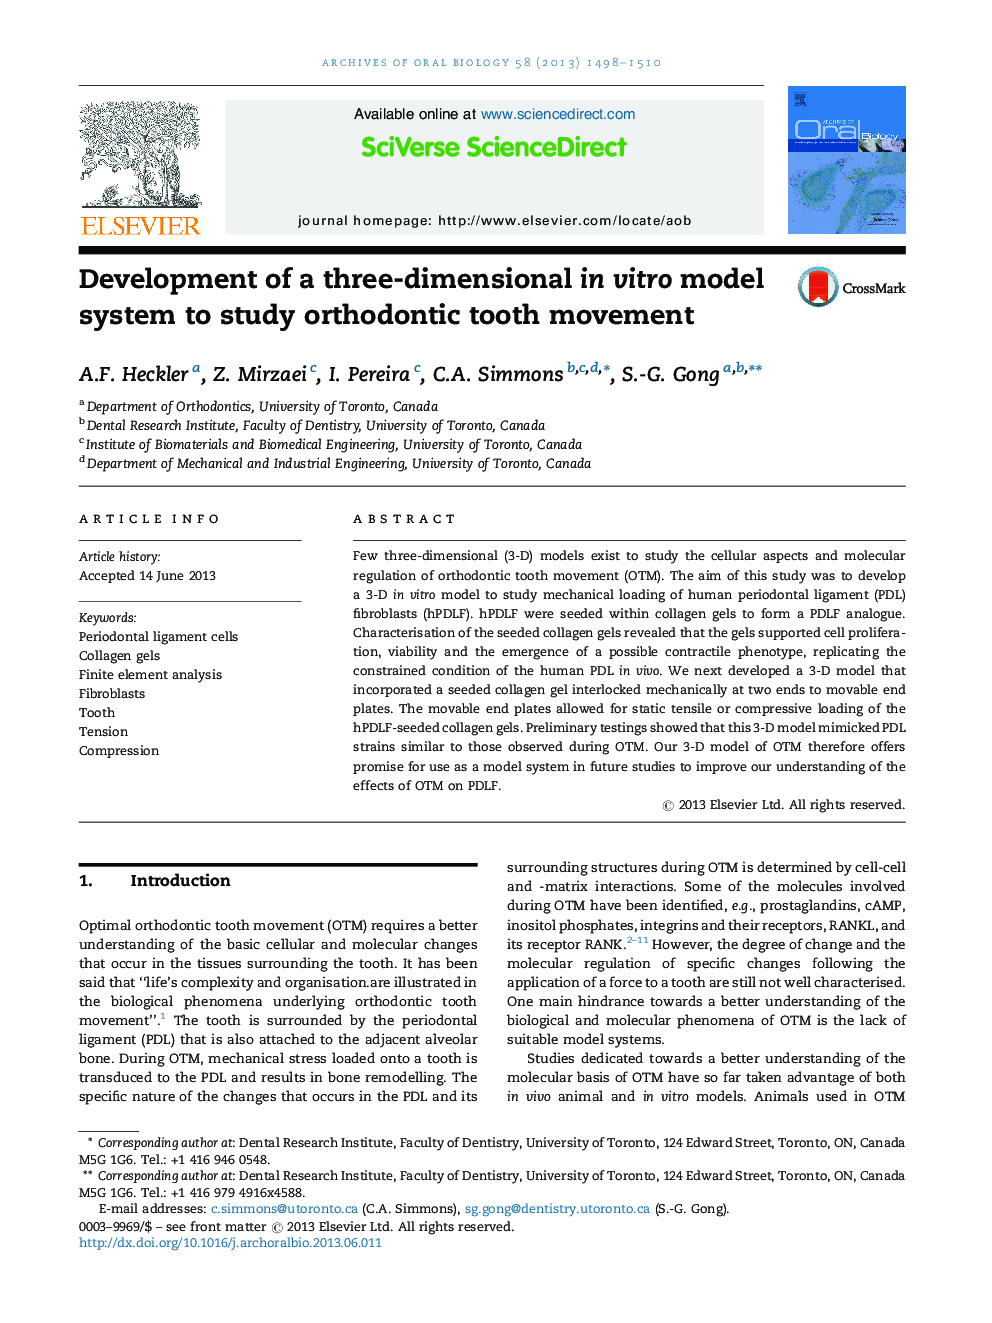 توسعه یک سیستم مدل سه بعدی برای مطالعه حرکت دندان ارتودنسی 